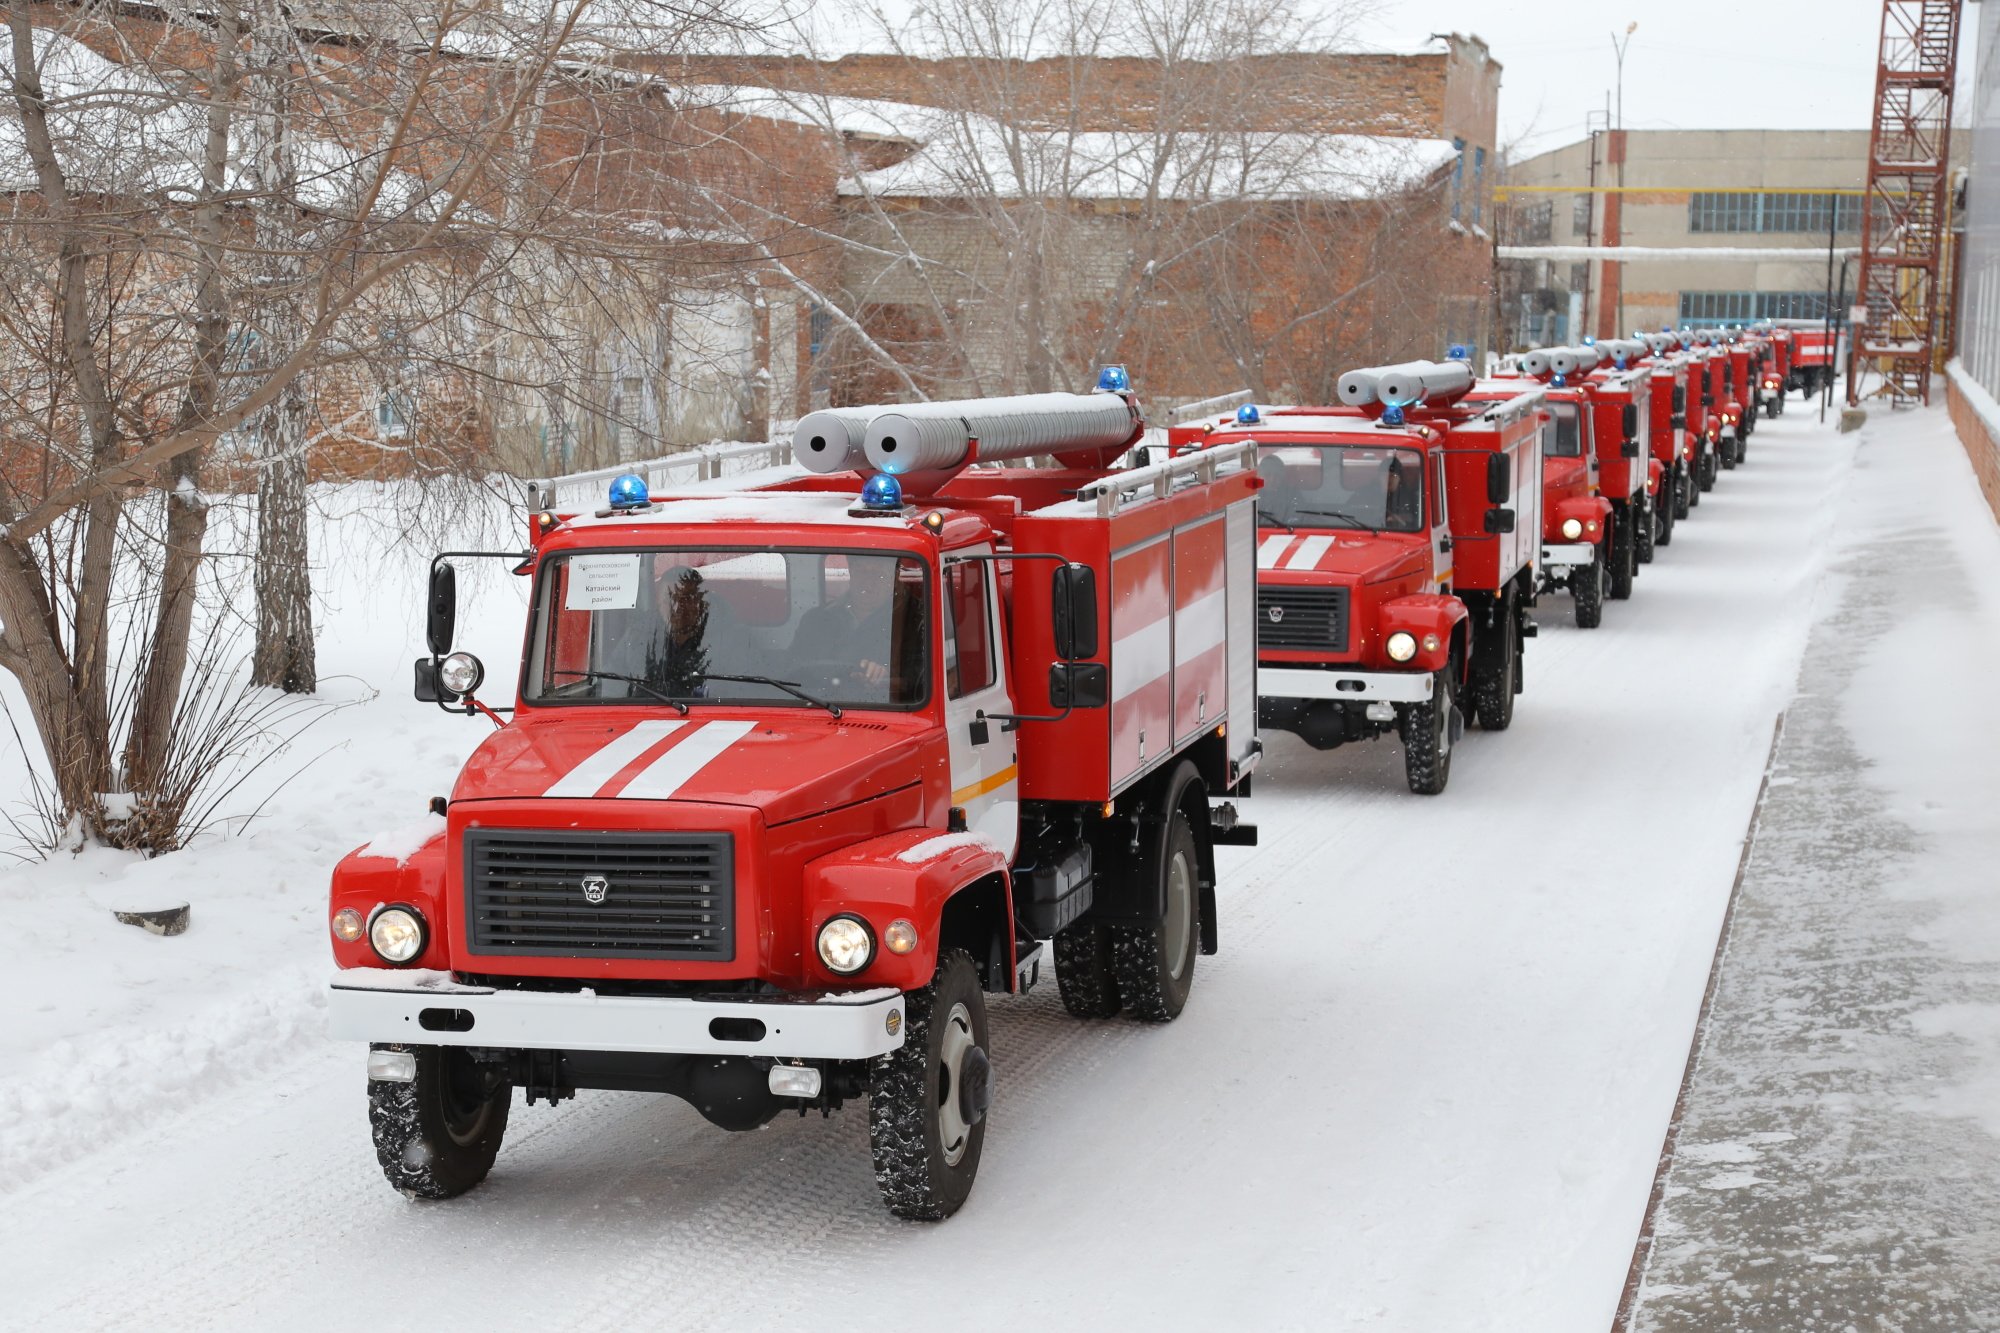 Машина пожарной службы. АЦ 3,0-40 (33086). АЦ 2,5-40 (33086). ГАЗ 33086 пожарная автоцистерна. Пожарная машина МЧС.